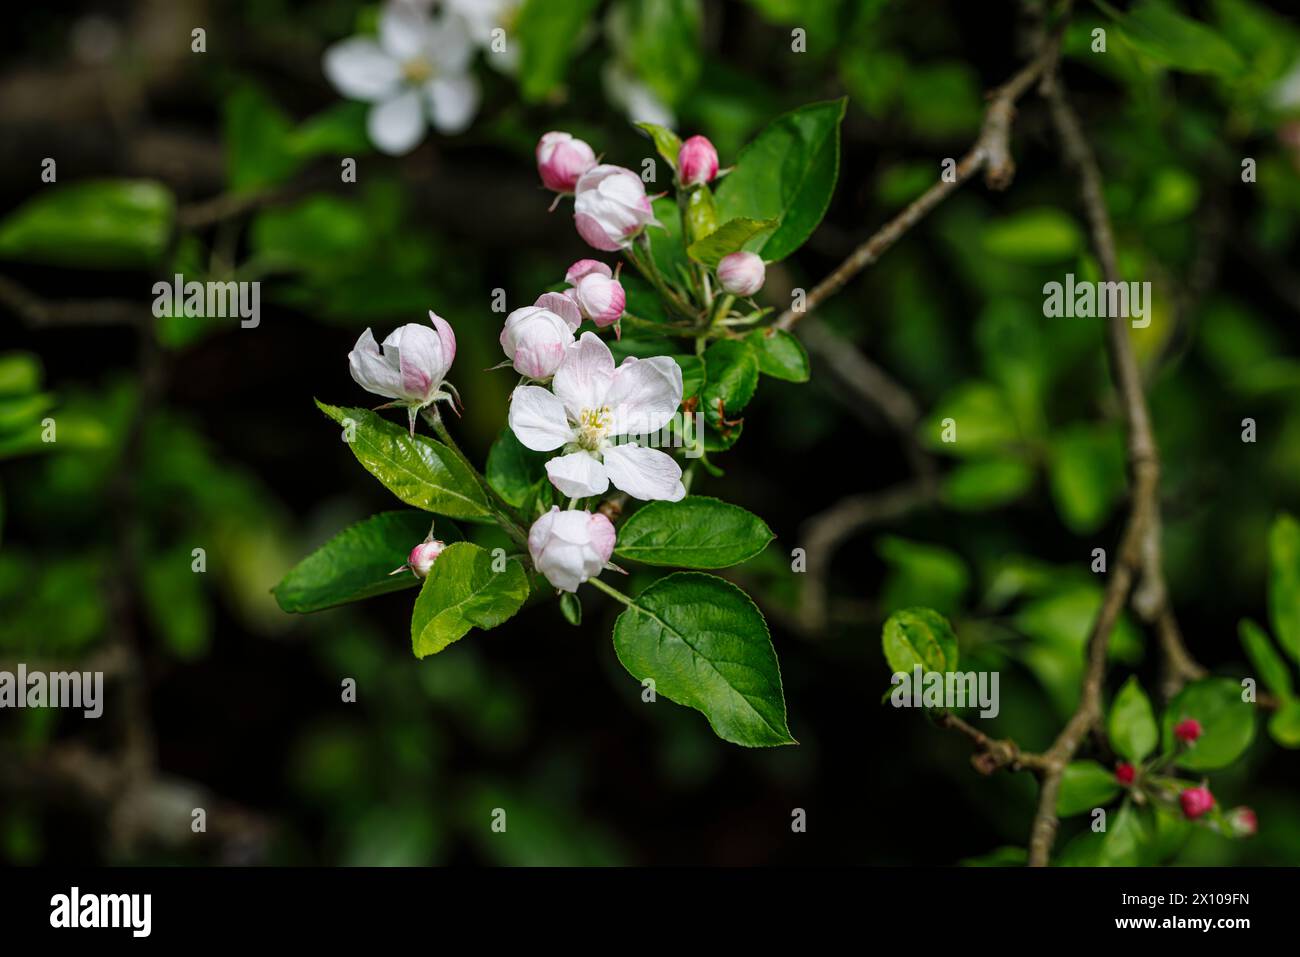 Vue rapprochée de jolis pommiers roses et blancs (Malus domestica) en fleurs et bourgeons au printemps dans un jardin du Surrey, dans le sud-est de l'Angleterre Banque D'Images